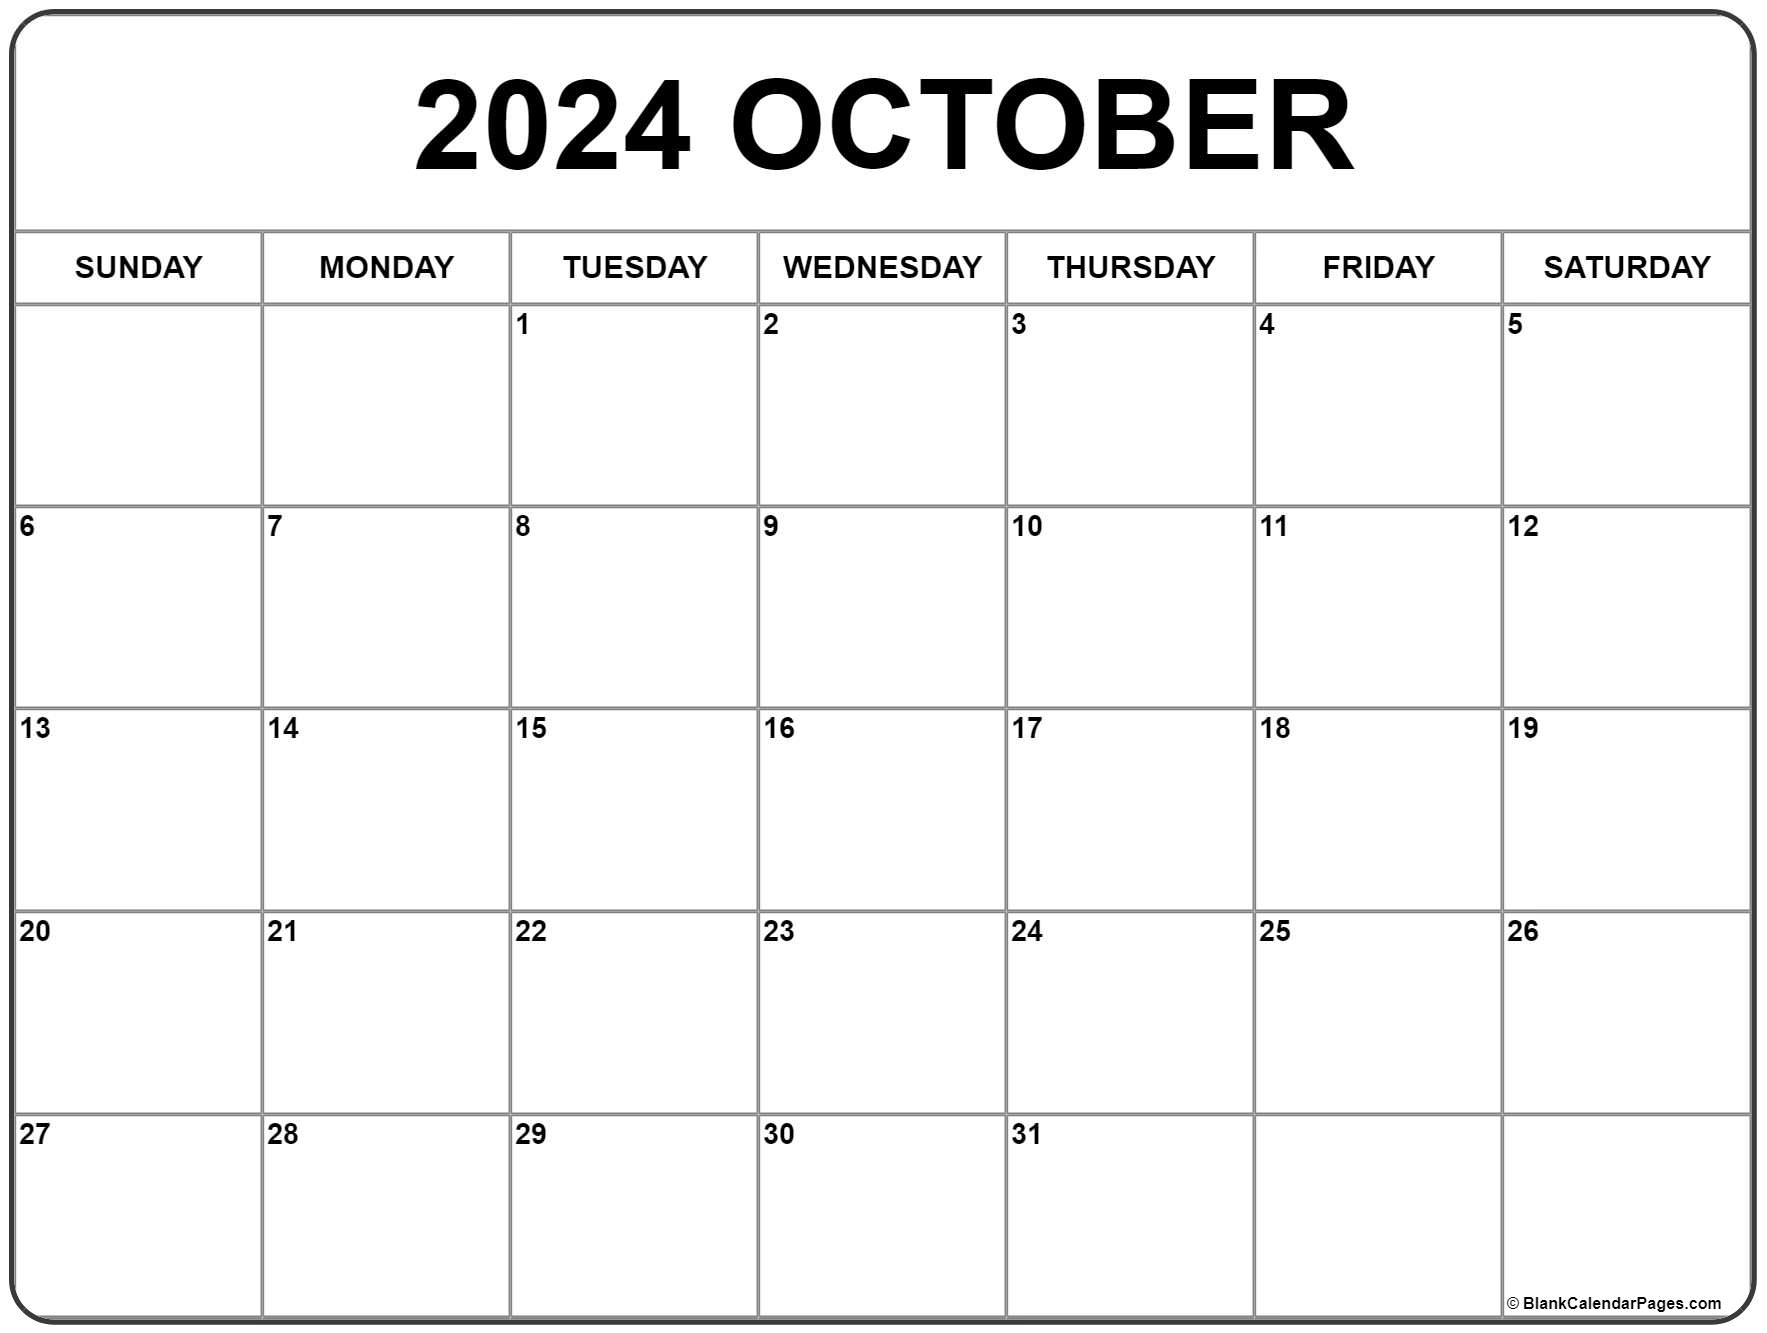 October 2024 Calendar | Free Printable Calendar | Printable Calendar 2024 October